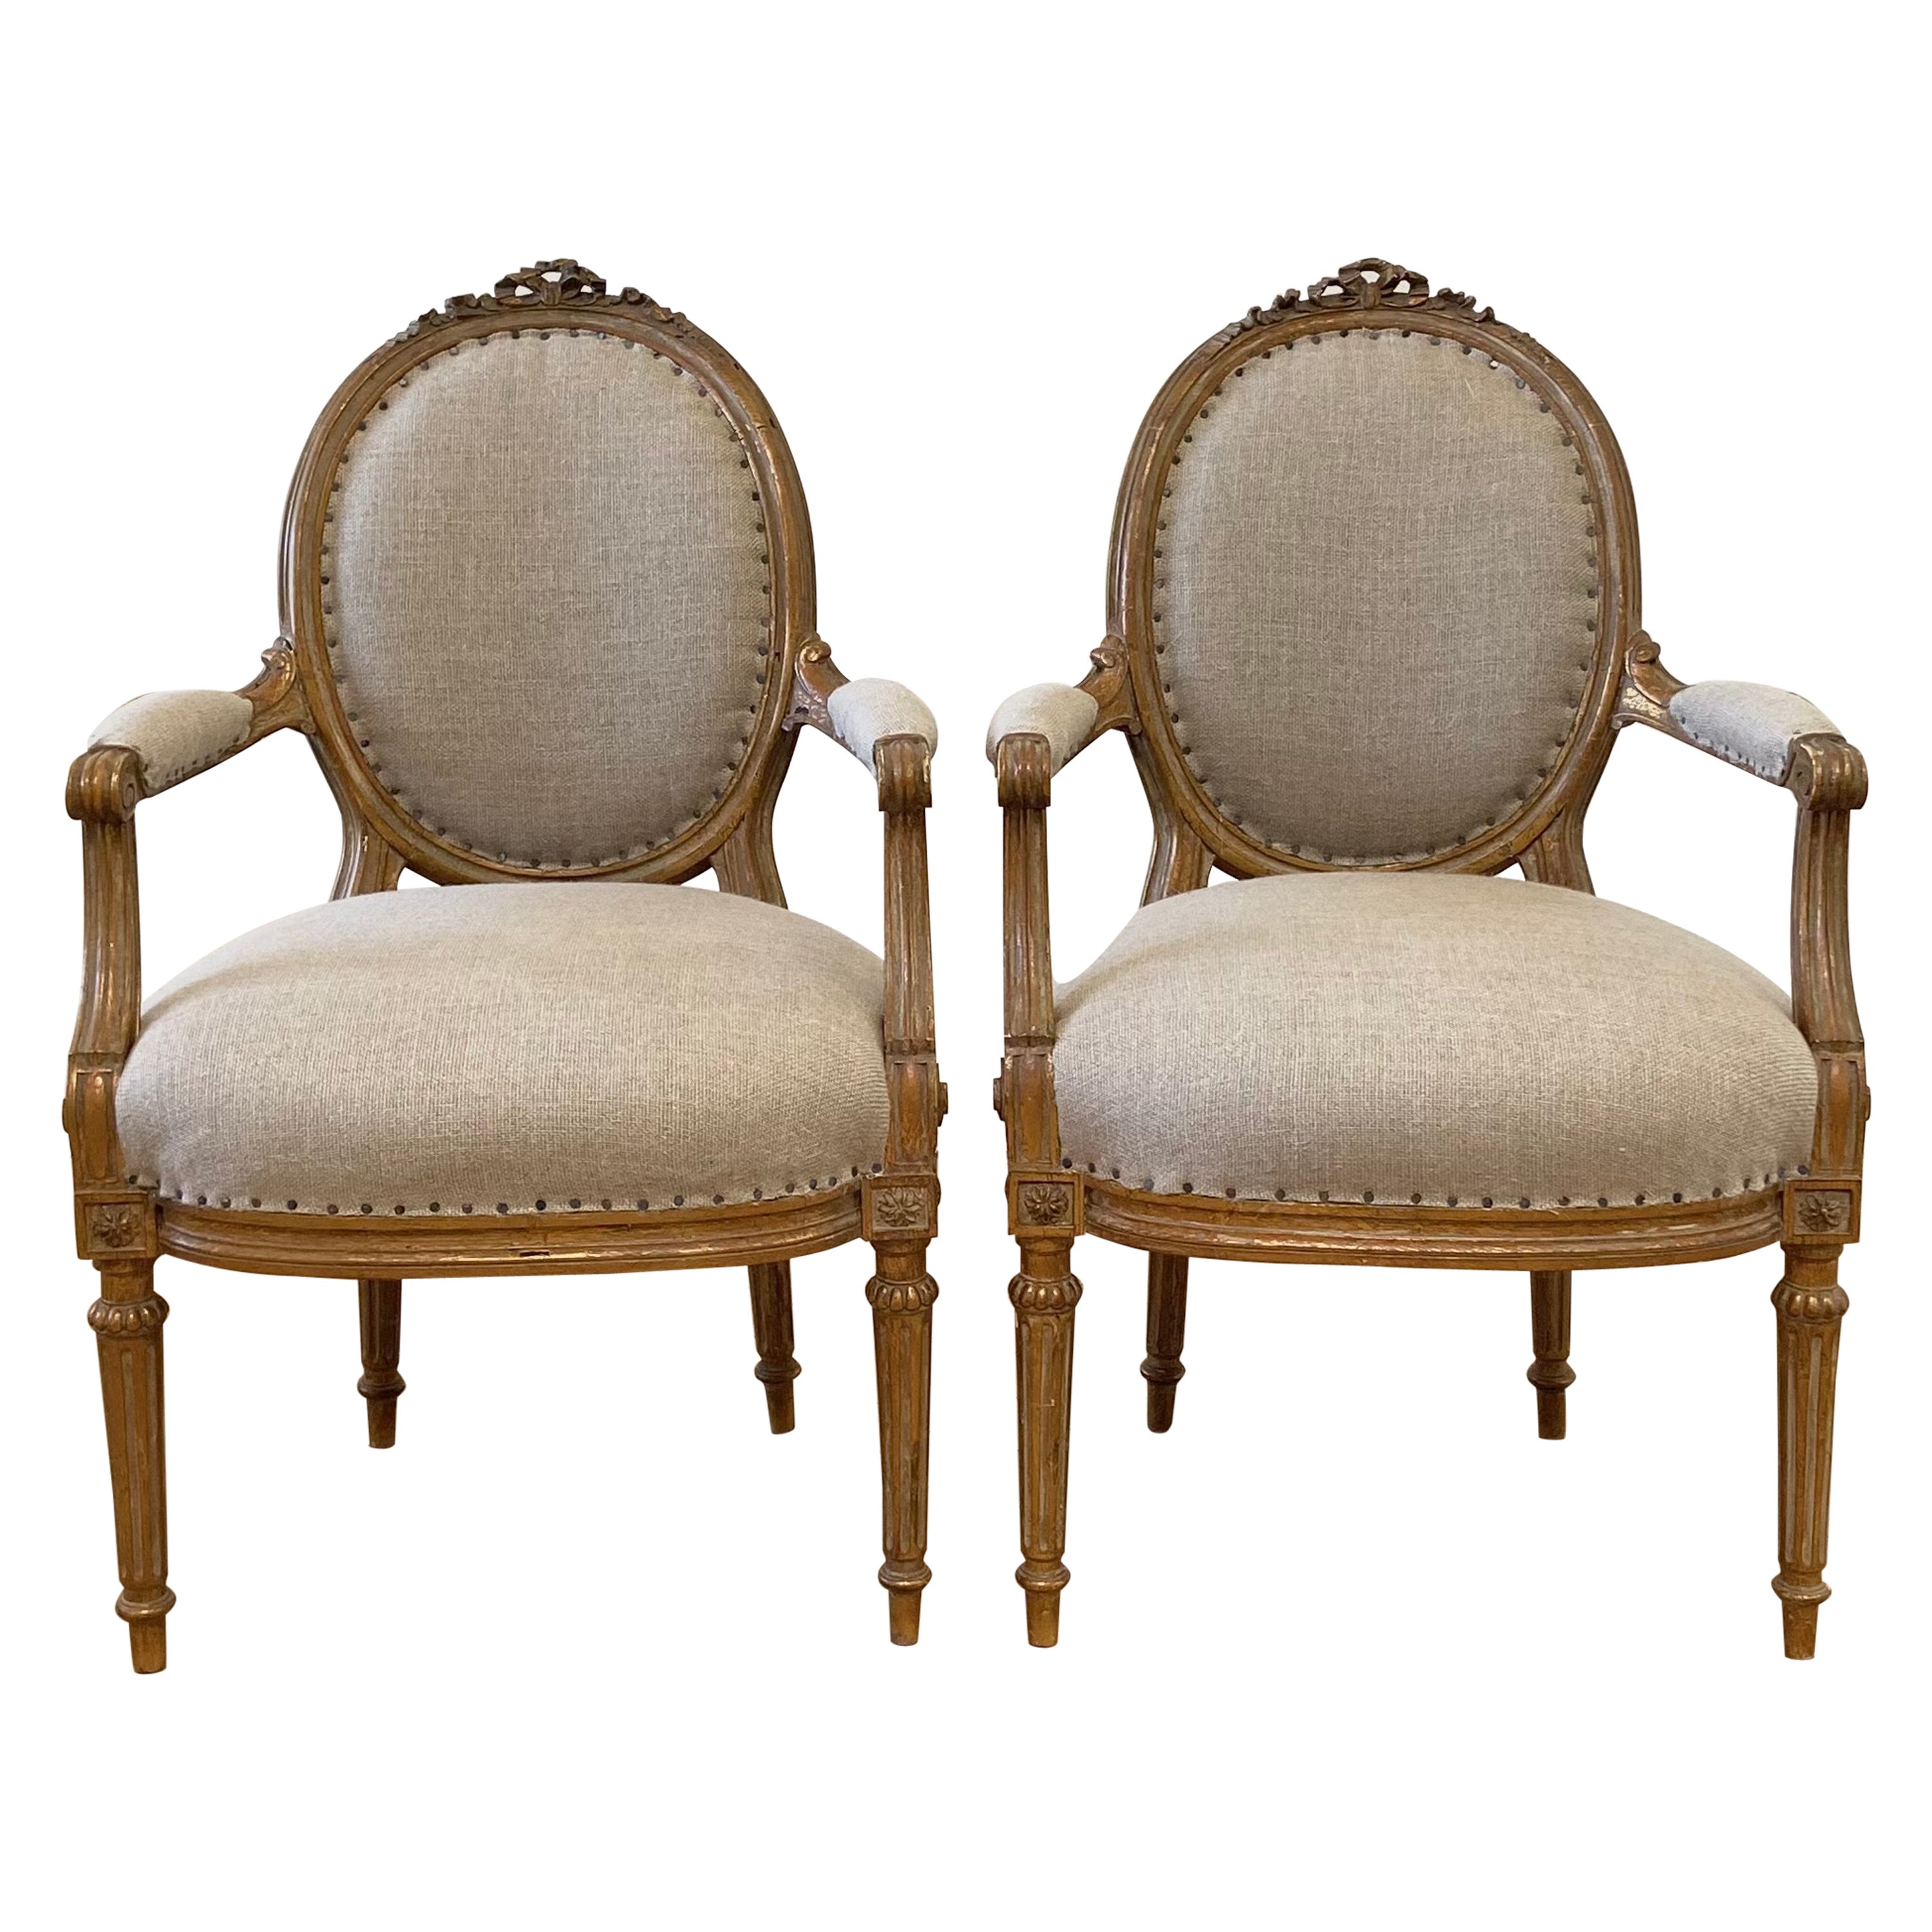 Ancienne paire de fauteuils ouverts en bois doré tapissés de lin naturel